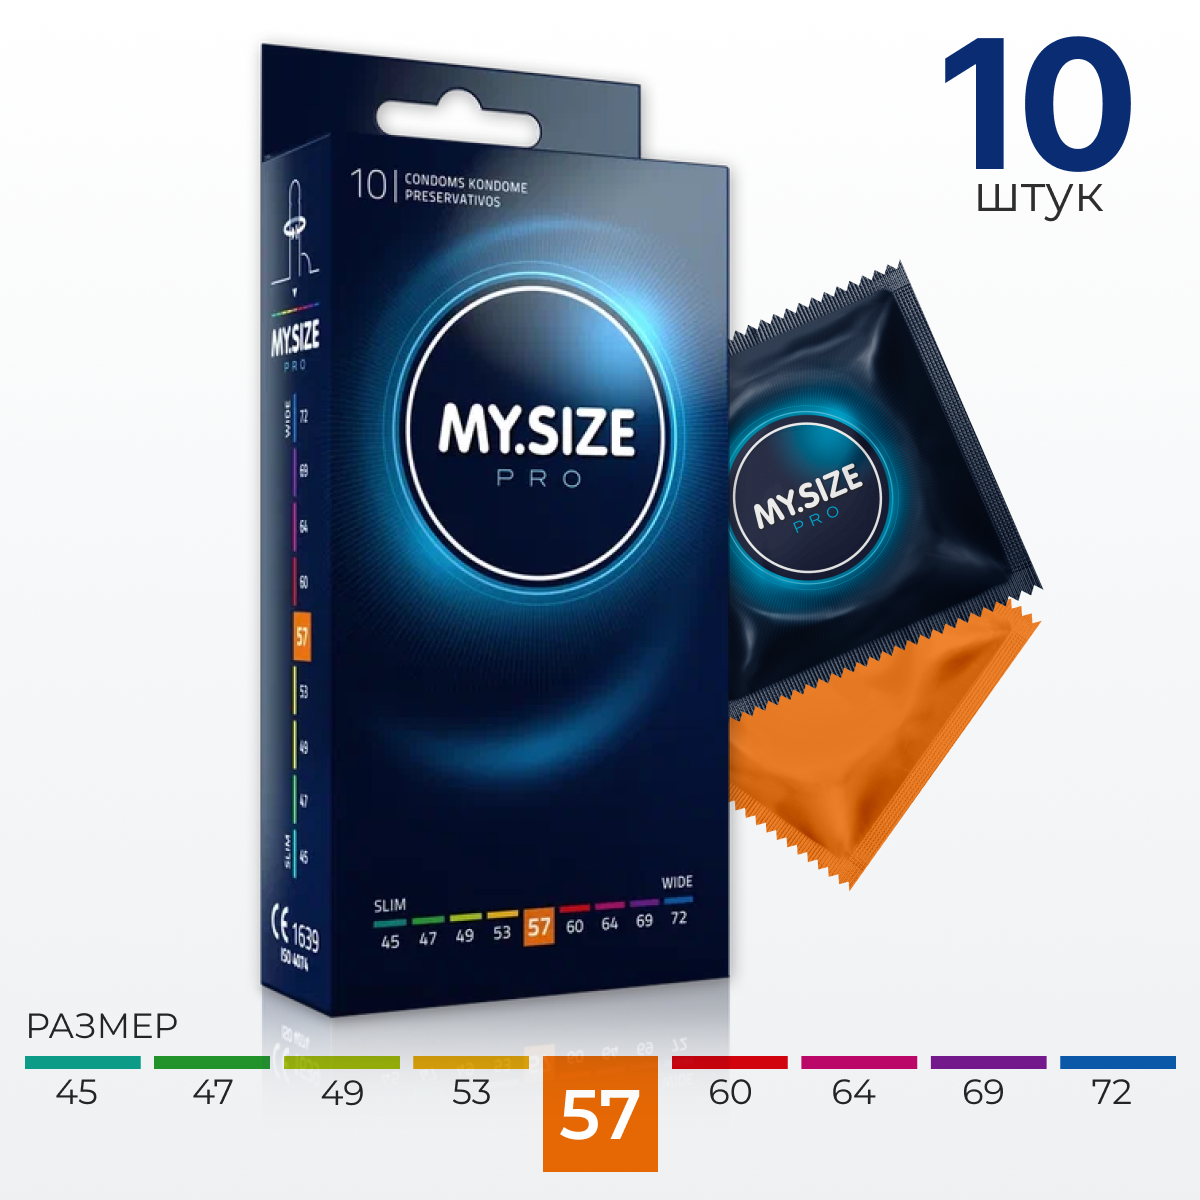 MY.SIZE / MY SIZE размер 57 (10 шт.)/ Майсайз презерватив среднего/ большого размера - ширина 57 мм